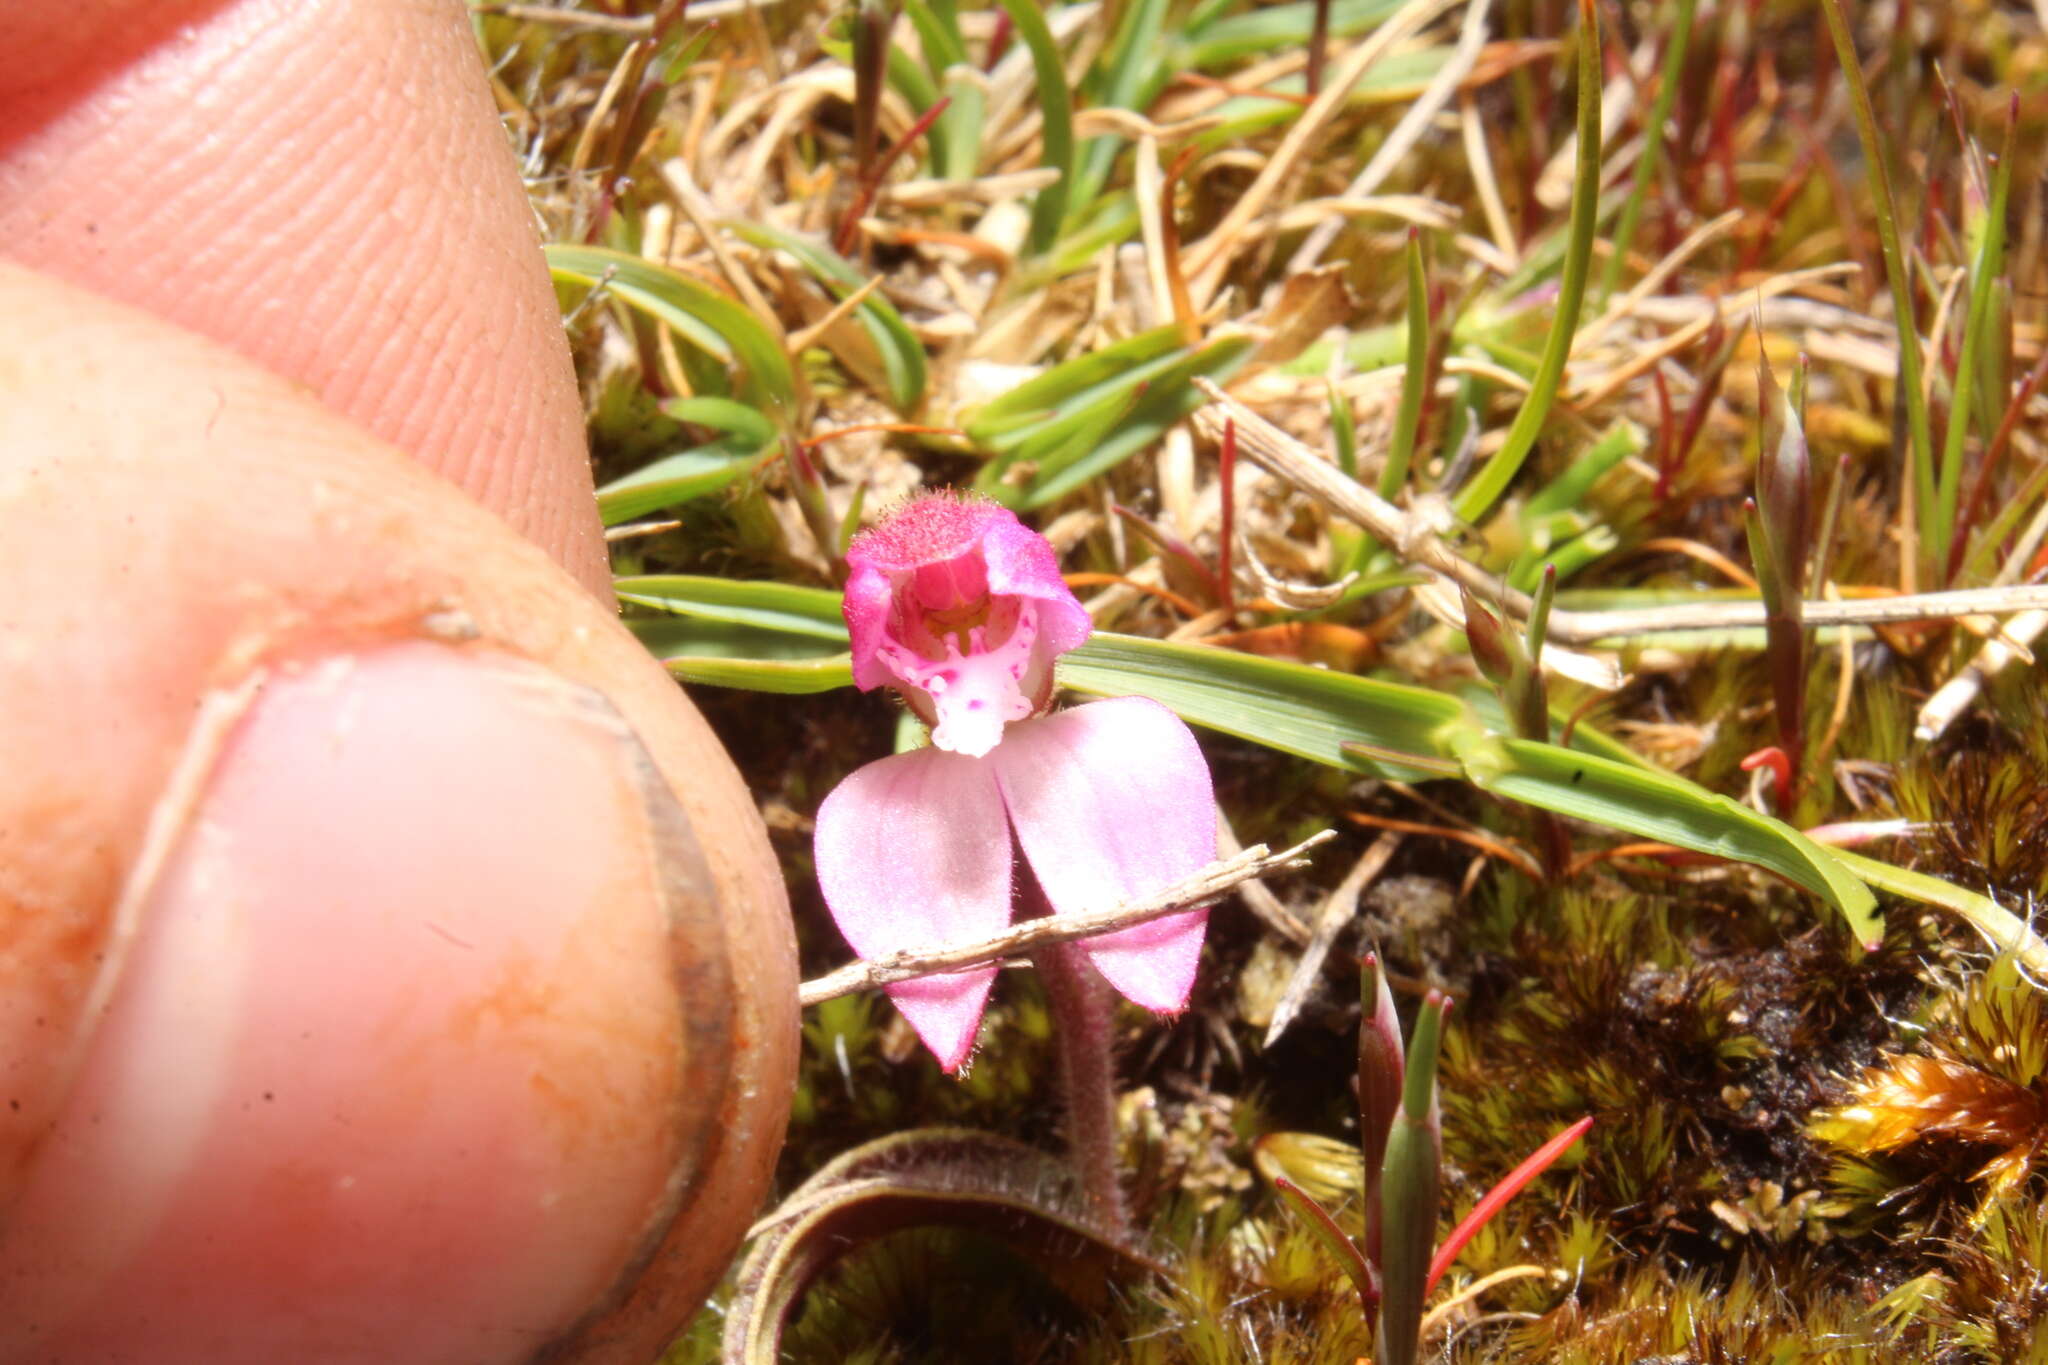 Image of Caladenia nana subsp. nana